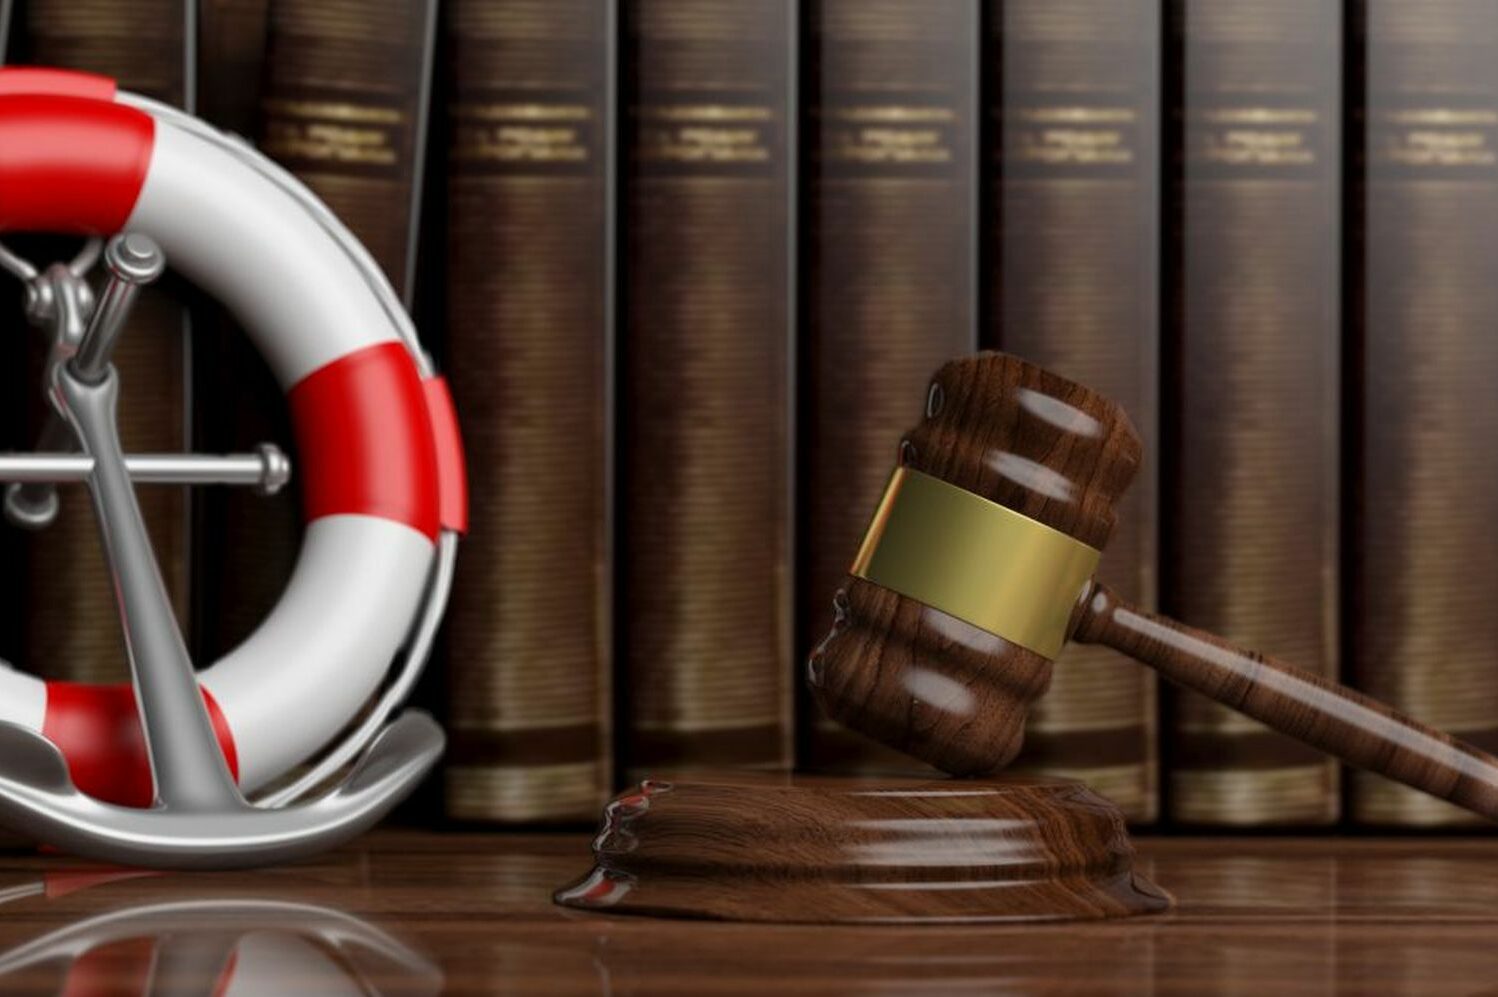 LLM Maritime Law – Part-time Online